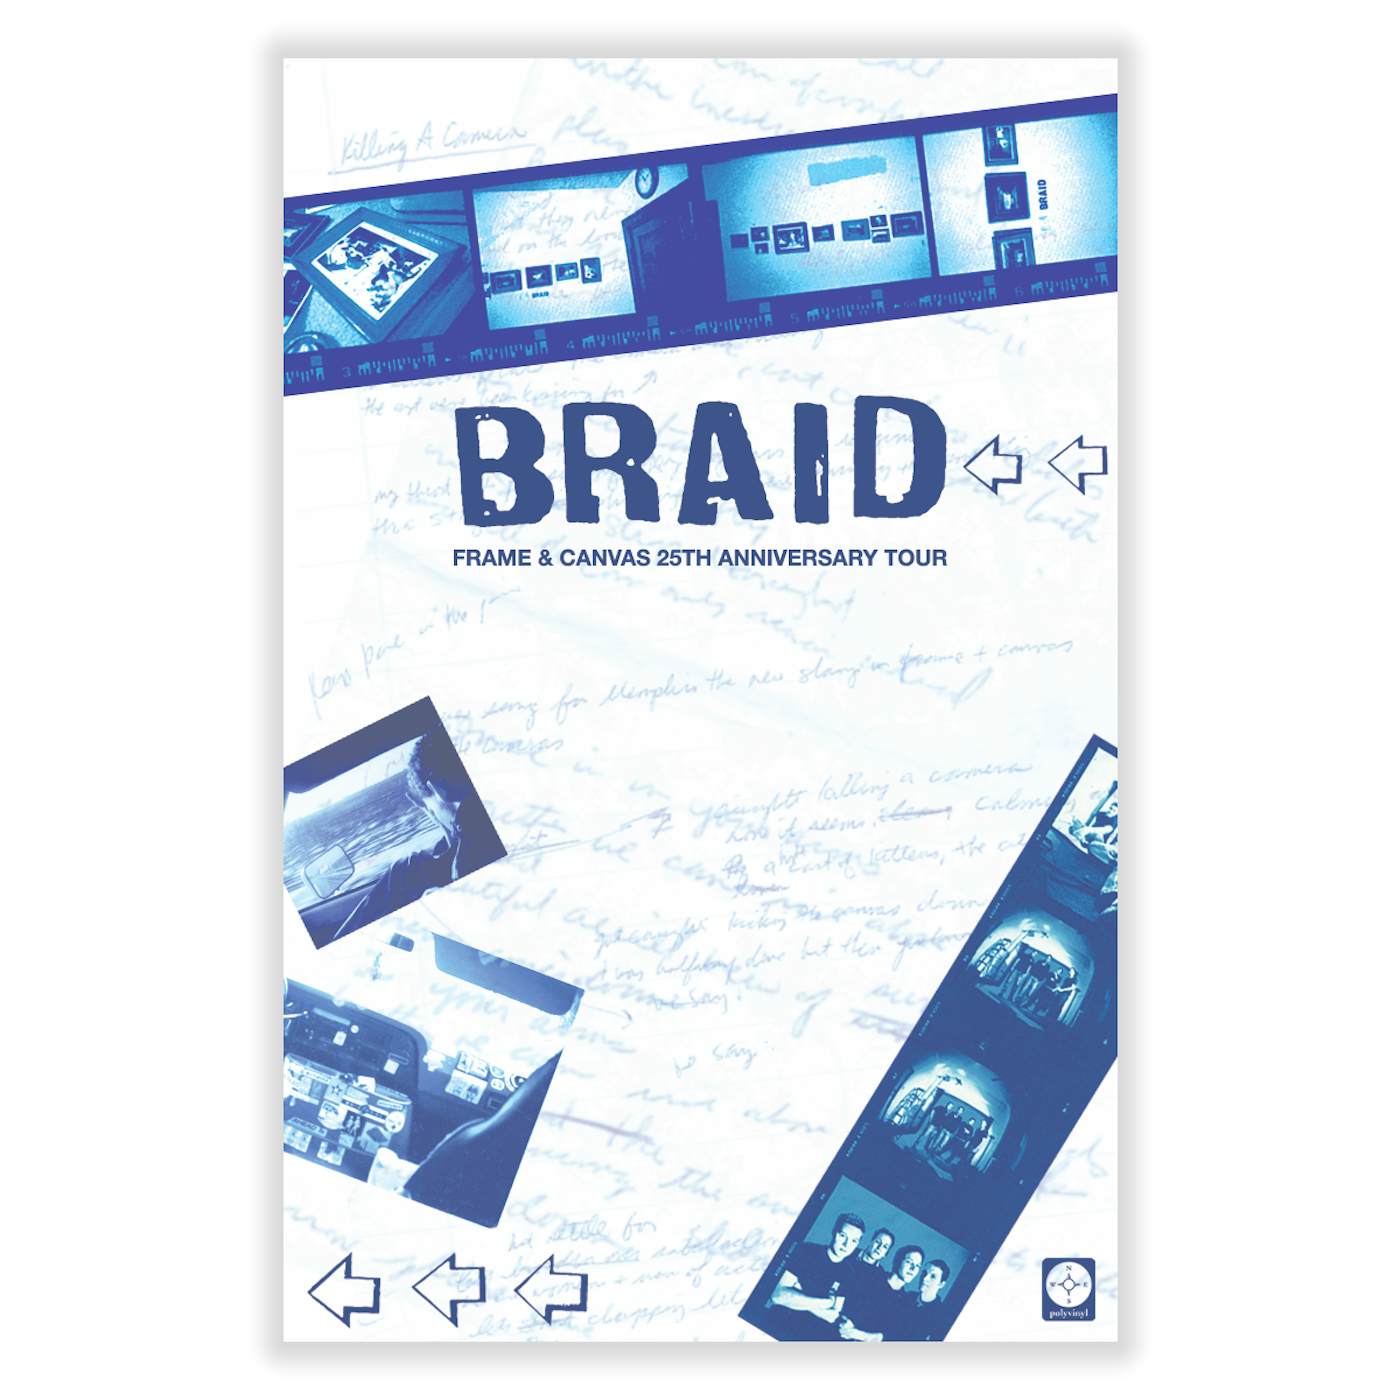 Braid Frame & Canvas 25th Anniversary Tour Poster (11"x17")